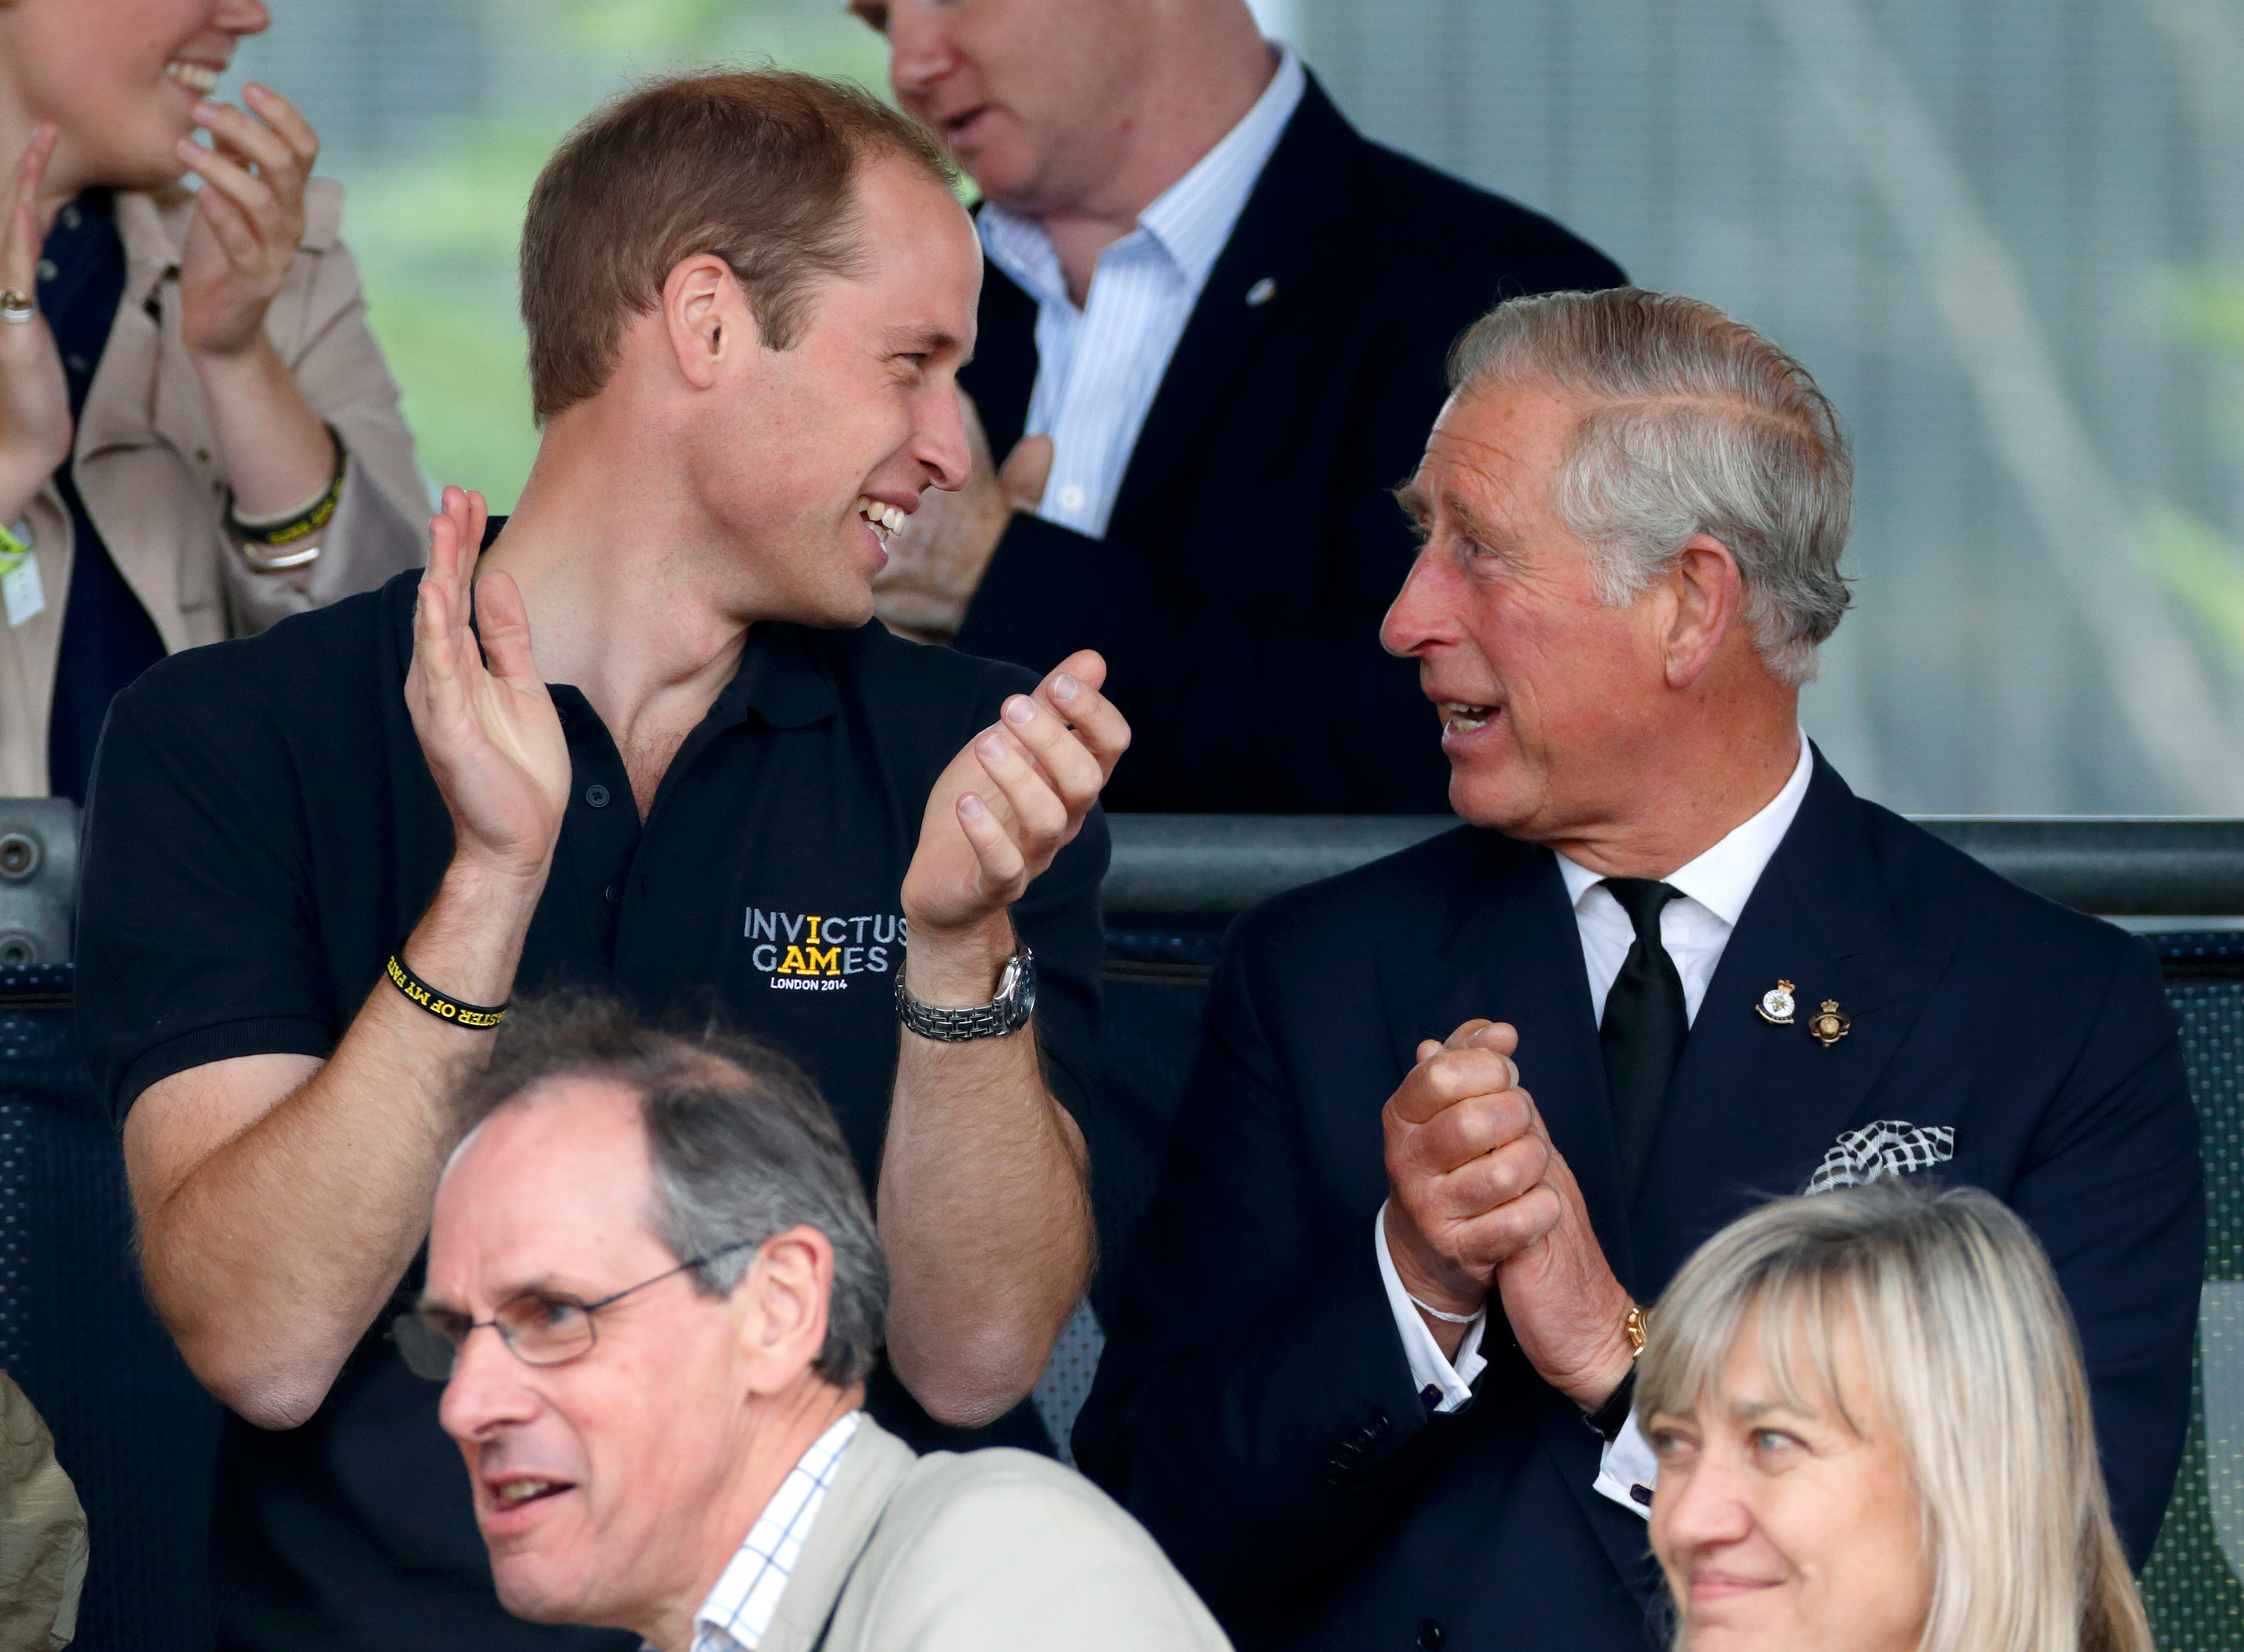 Le prince William et le roi Charles III aux Invictus Games à Londres, en Angleterre, le 11 septembre 2014 | Source : Getty Images